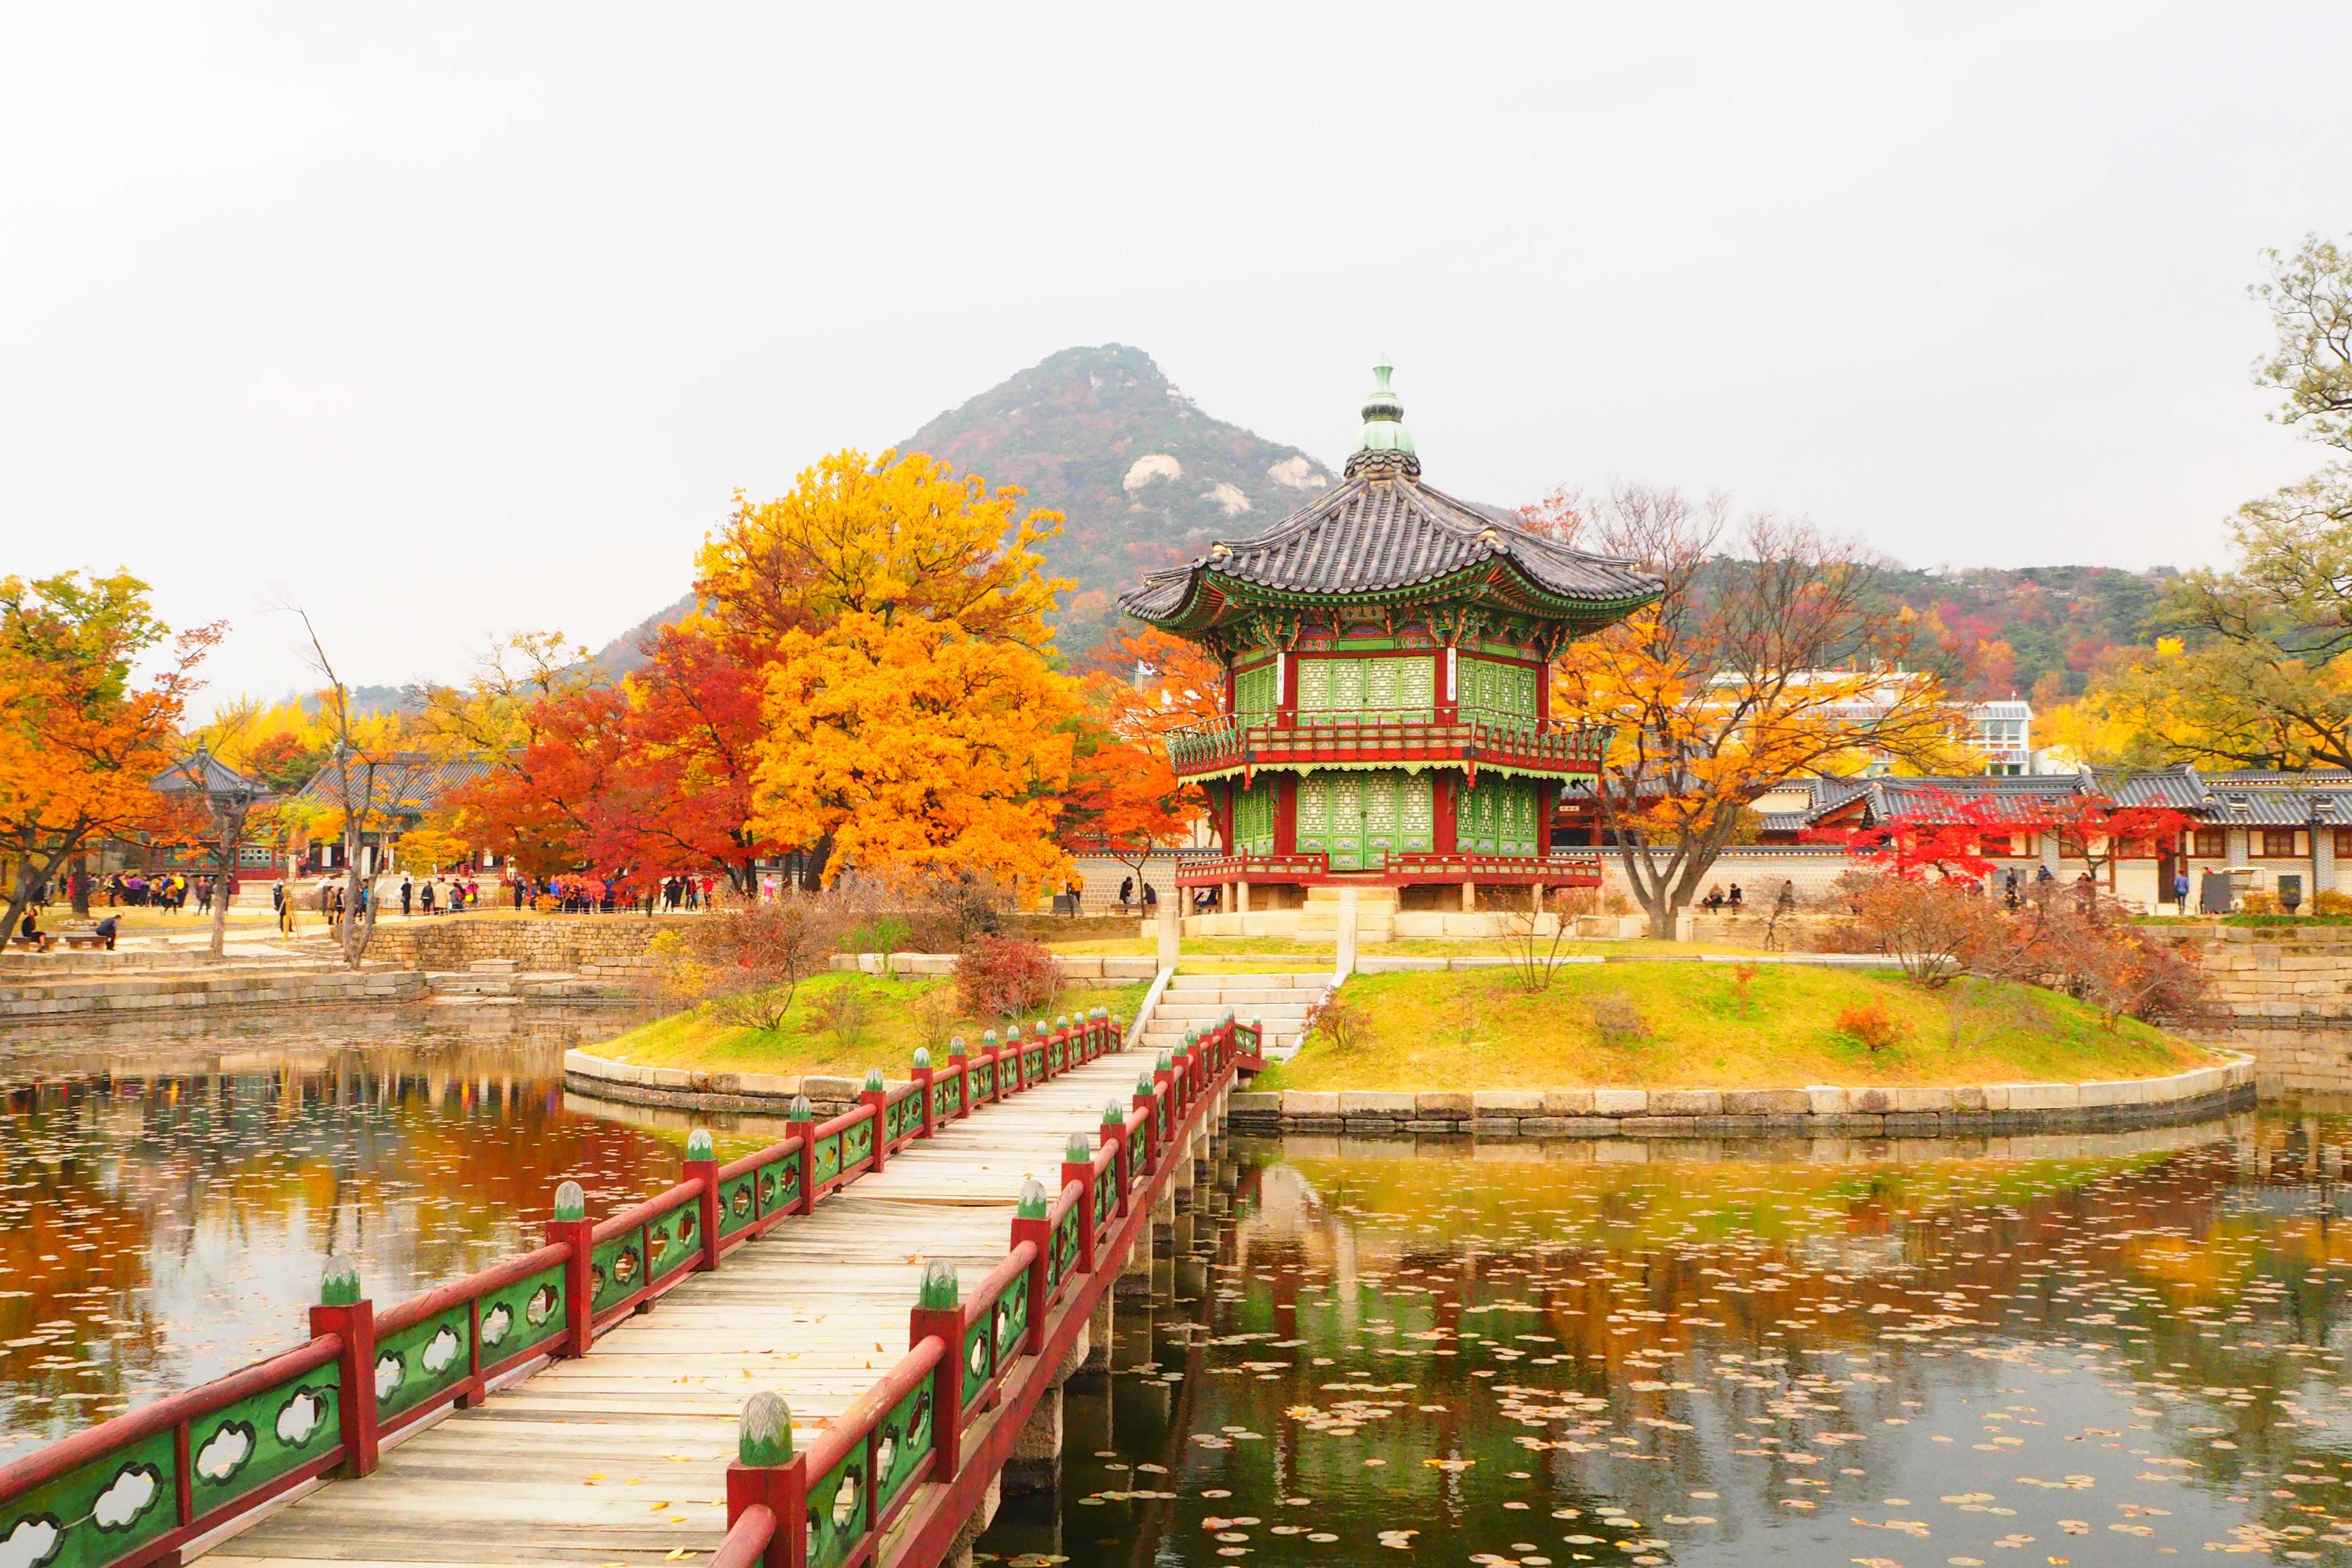 Cung điện Gyeongbokgung là một trong những điểm tham quan nổi tiếng ở xứ sở củ sâm.  - cung_dien_gyeongbokgung - Đường bay mới của Vietjet kết nối Cần Thơ, Đà Lạt với Seoul